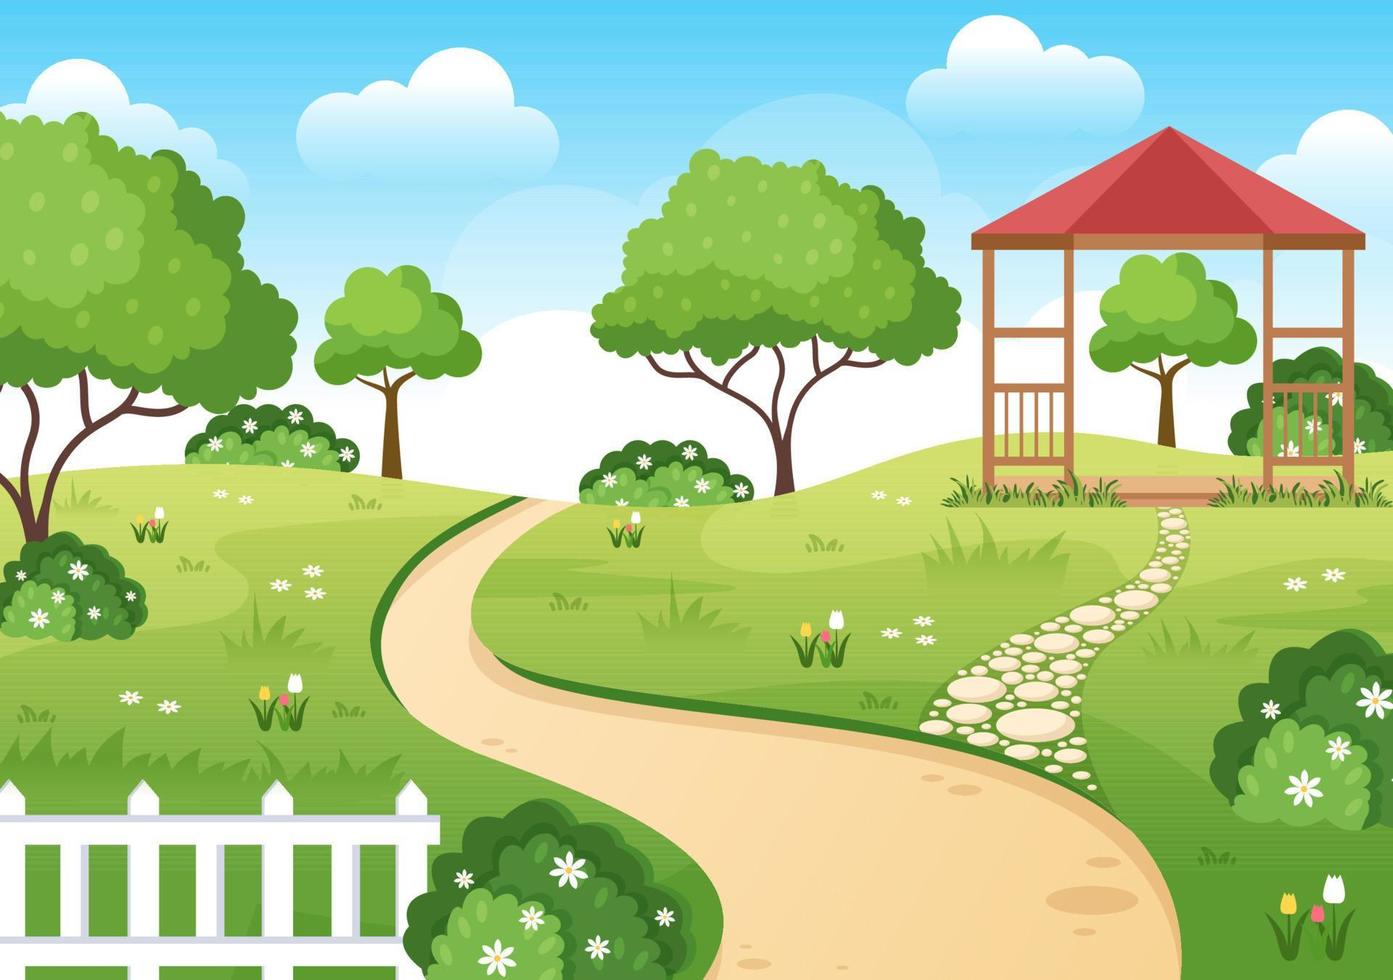 schöne gartenkarikatur-hintergrundillustration mit einer landschaftsnatur der pflanze, der blumen, des baums und des grünen grases in der flachen designart vektor